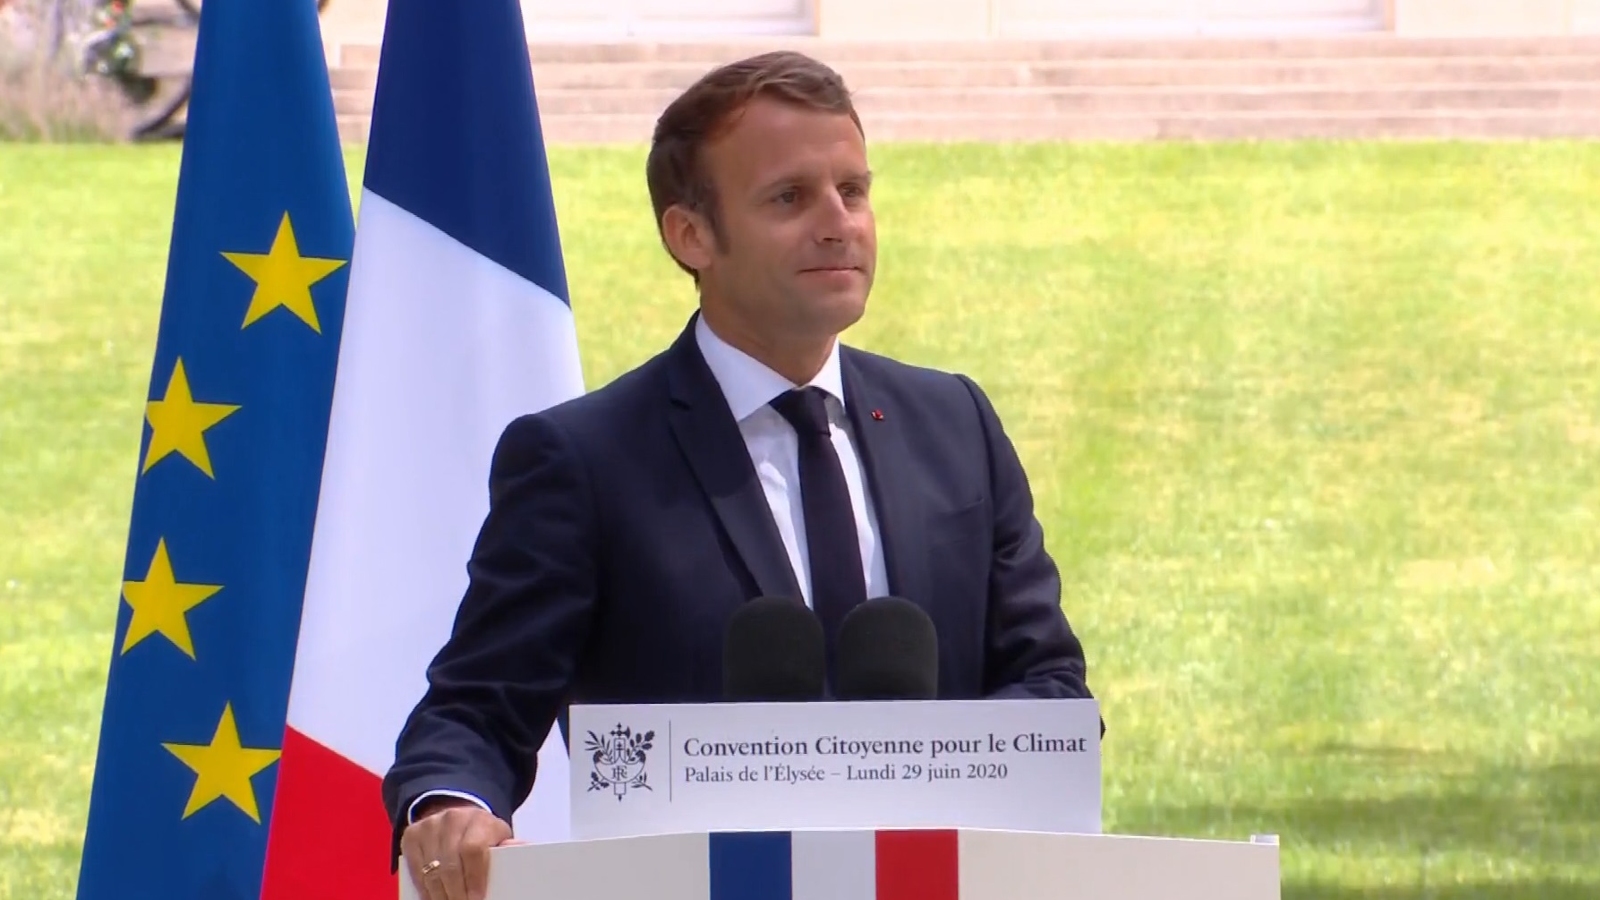 Convention citoyenne pour le climat : Macron promet 15 milliards d'euros et des réponses 